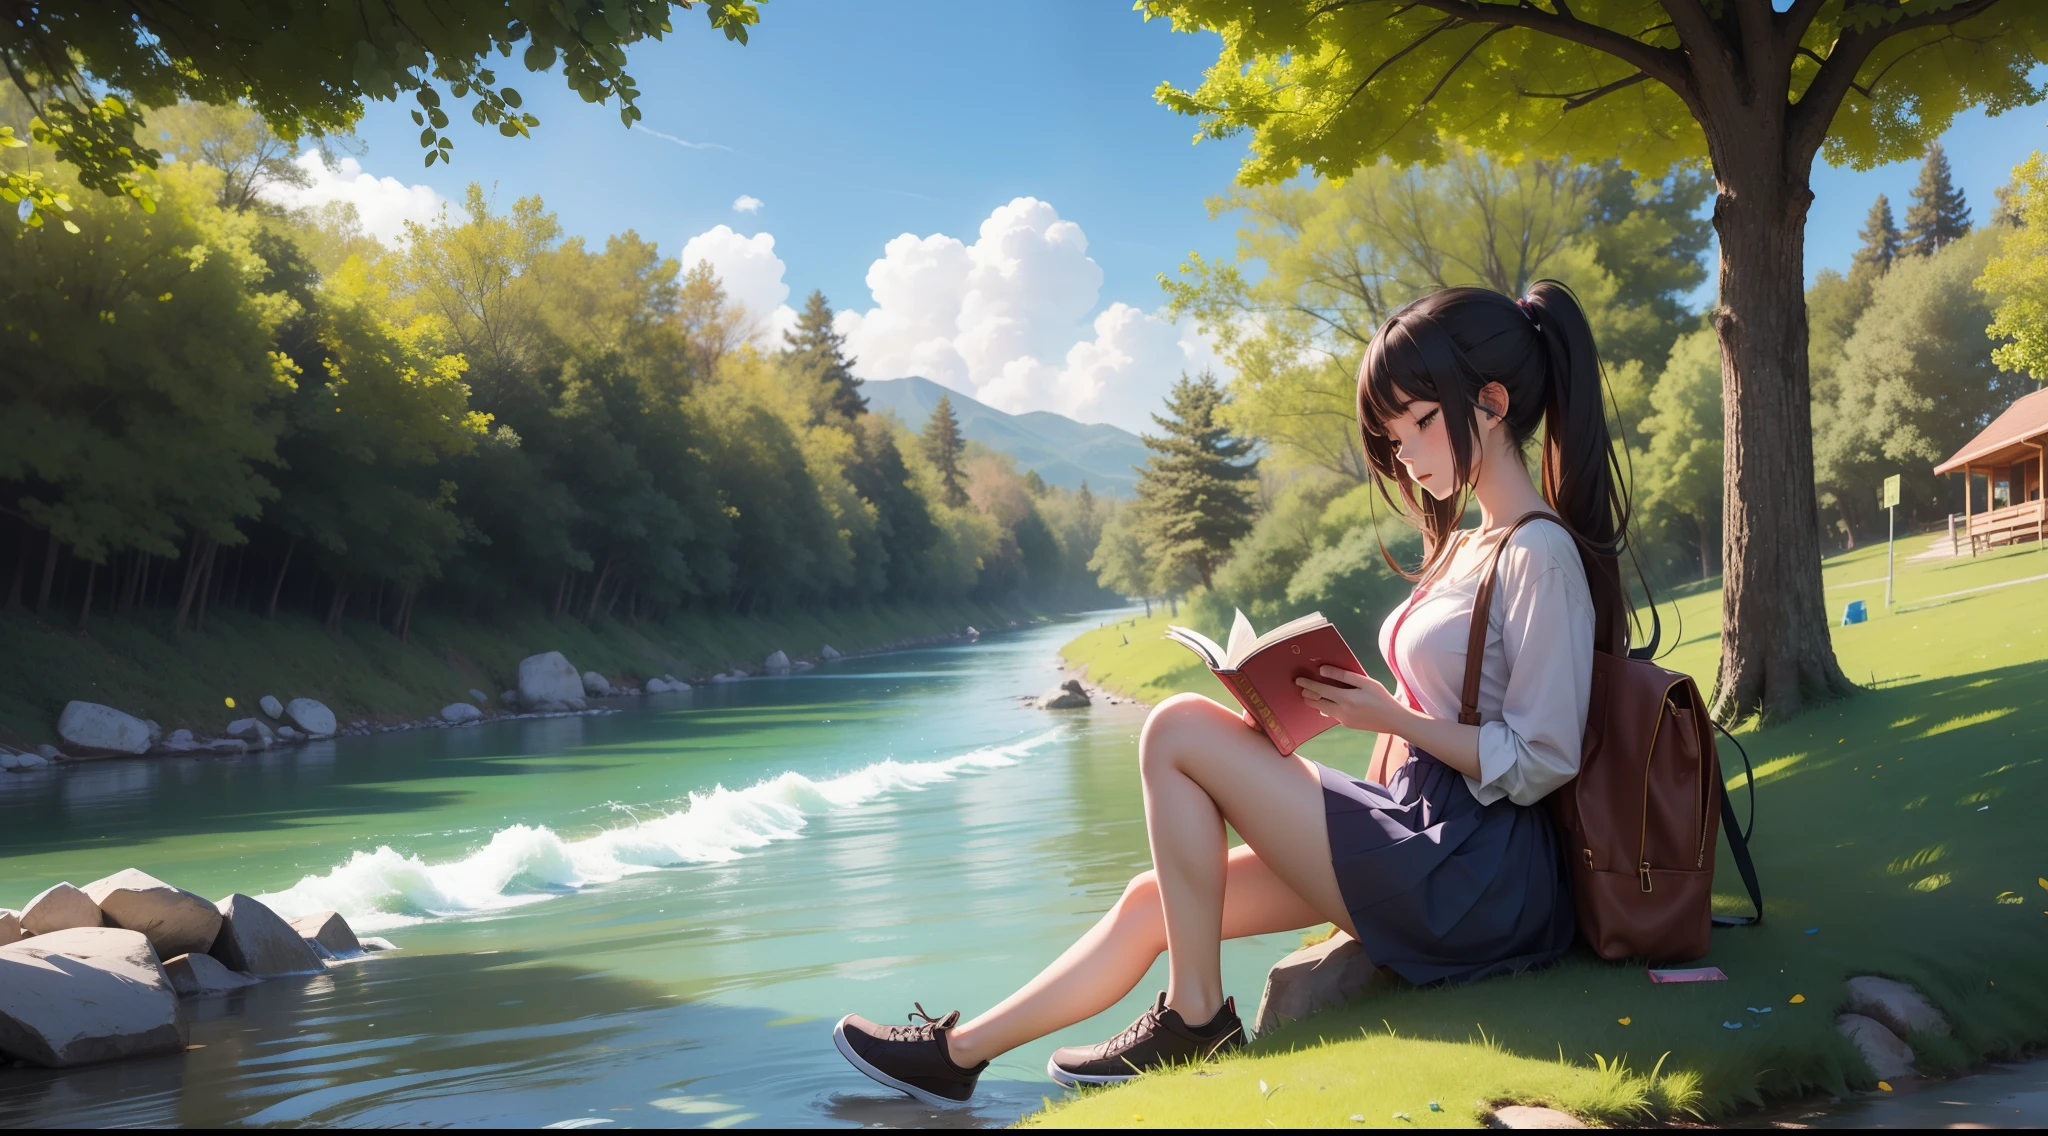 "Uma garota de anime lendo enquanto ouve música debaixo de uma árvore perto de um rio."